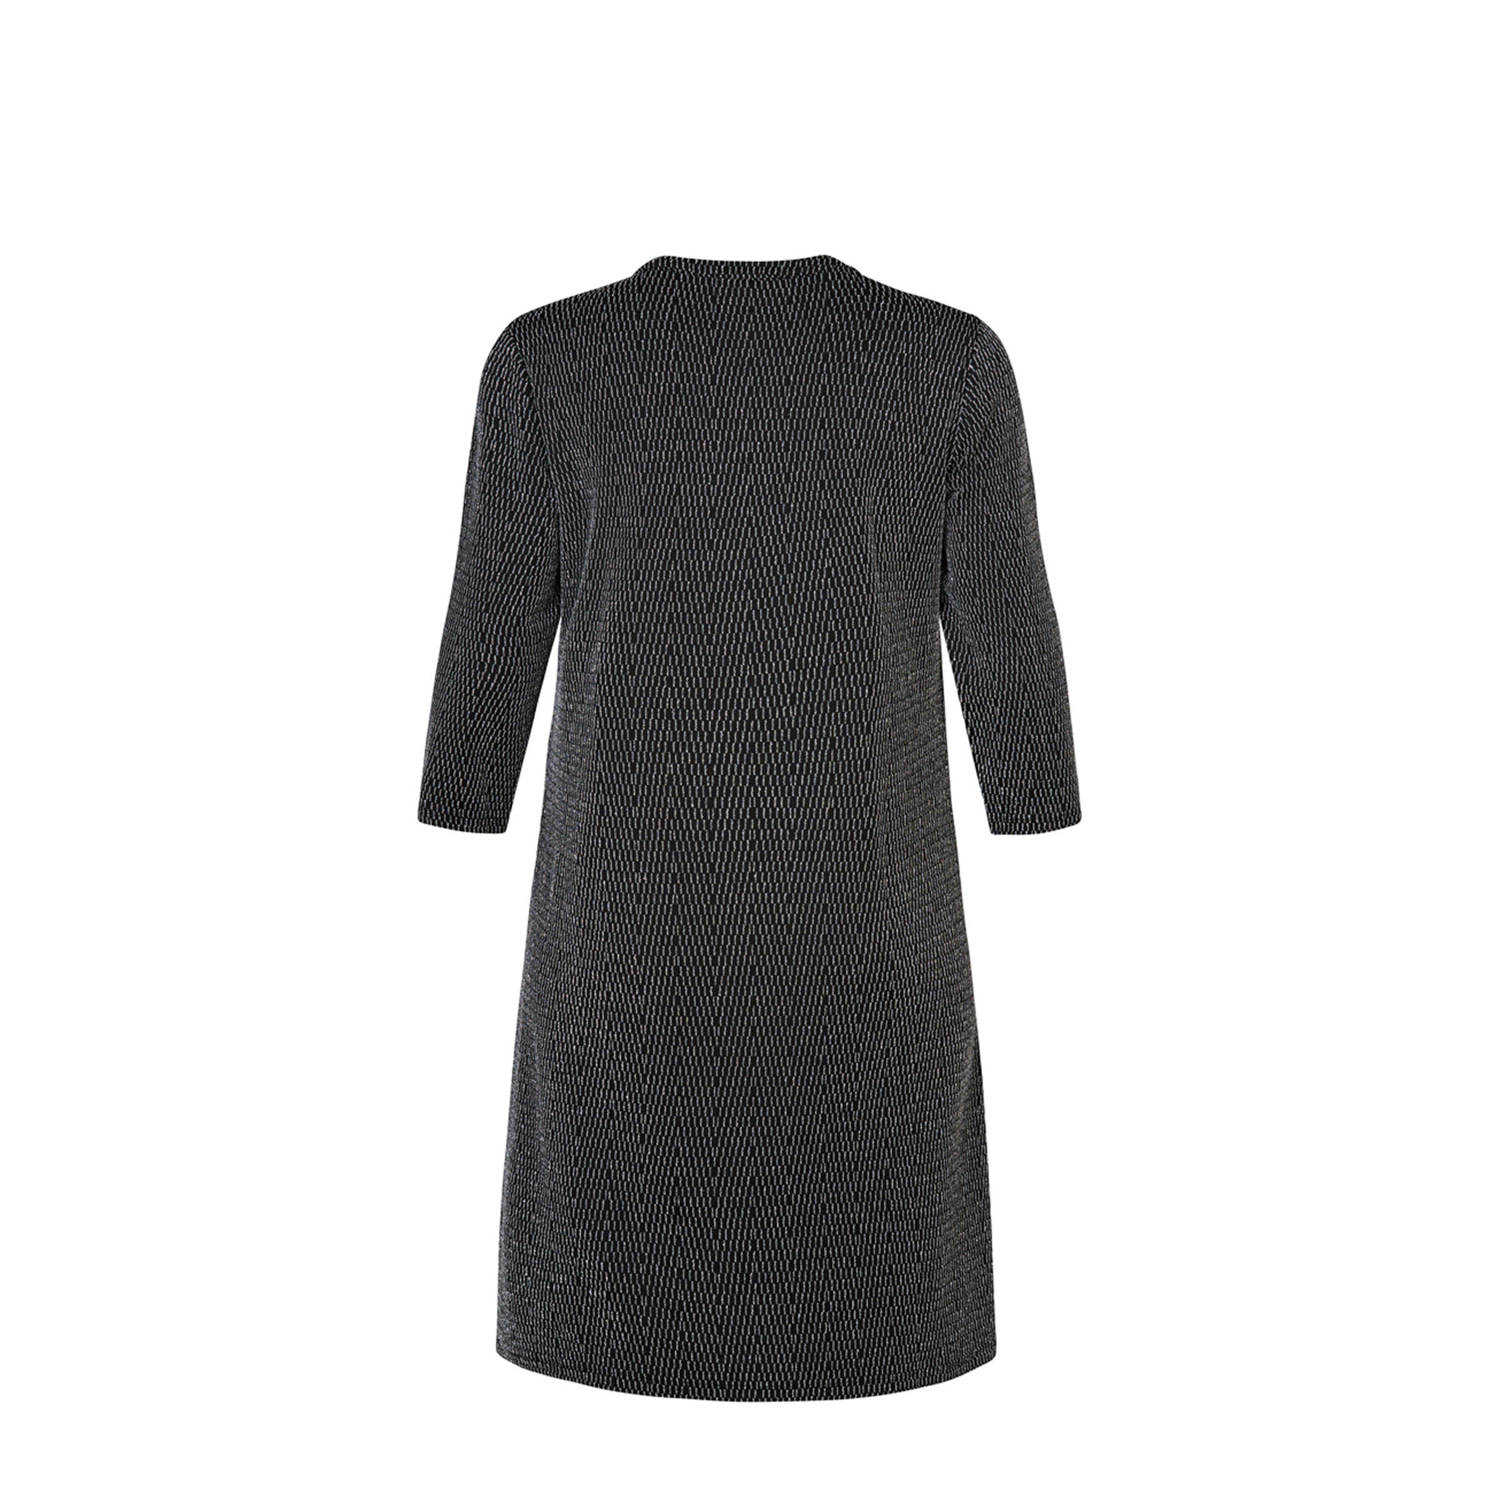 Miss Etam Plus jurk met all over print zilver zwart